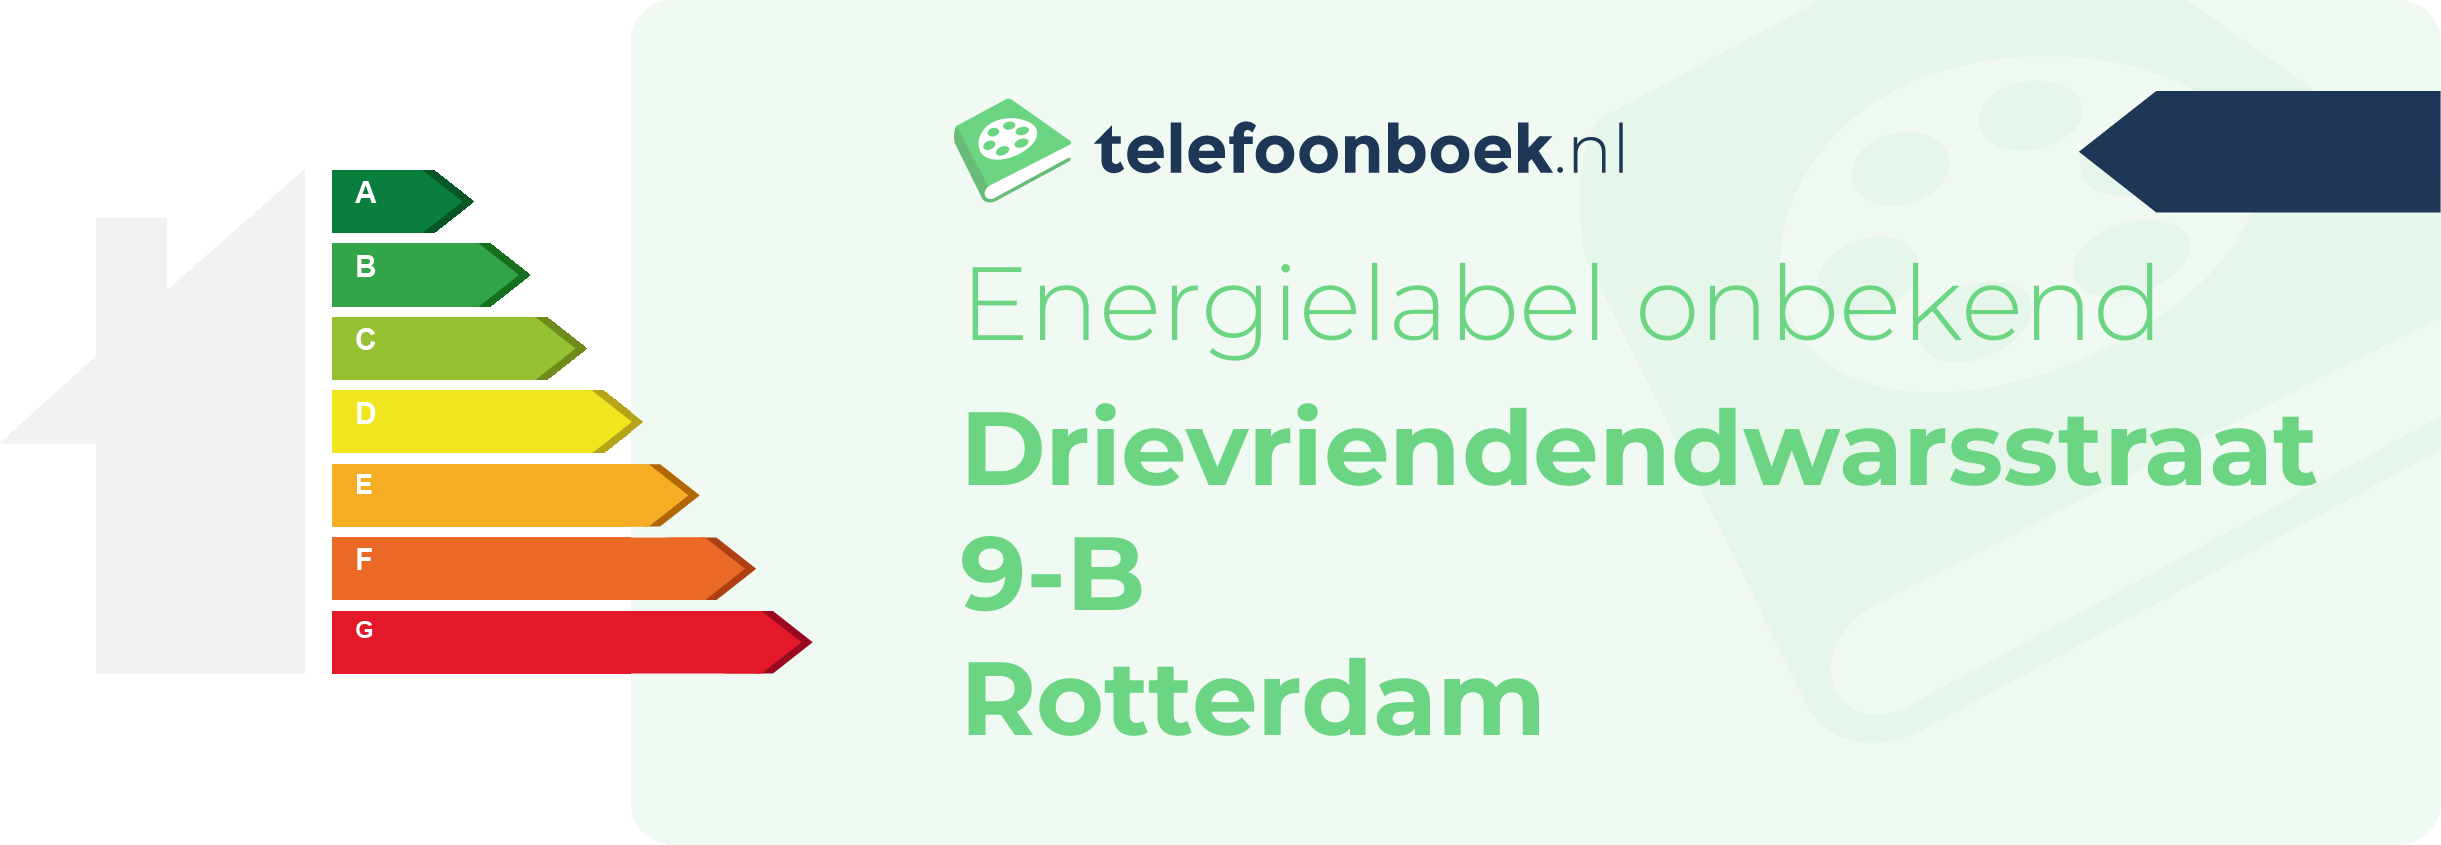 Energielabel Drievriendendwarsstraat 9-B Rotterdam